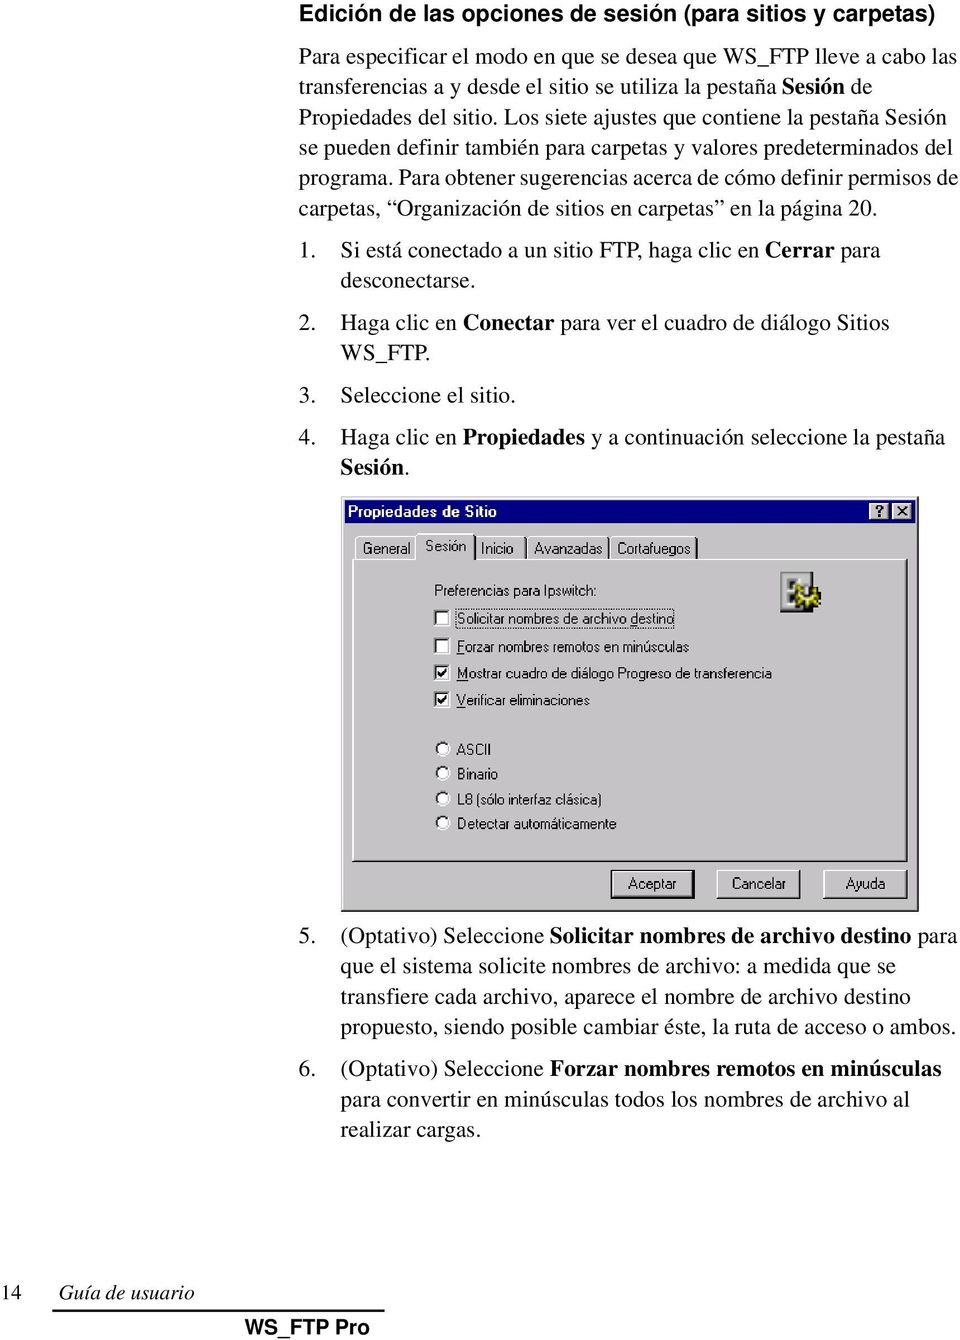 Para obtener sugerencias acerca de cómo definir permisos de carpetas, Organización de sitios en carpetas en la página 20. 1. Si está conectado a un sitio FTP, haga clic en Cerrar para desconectarse.